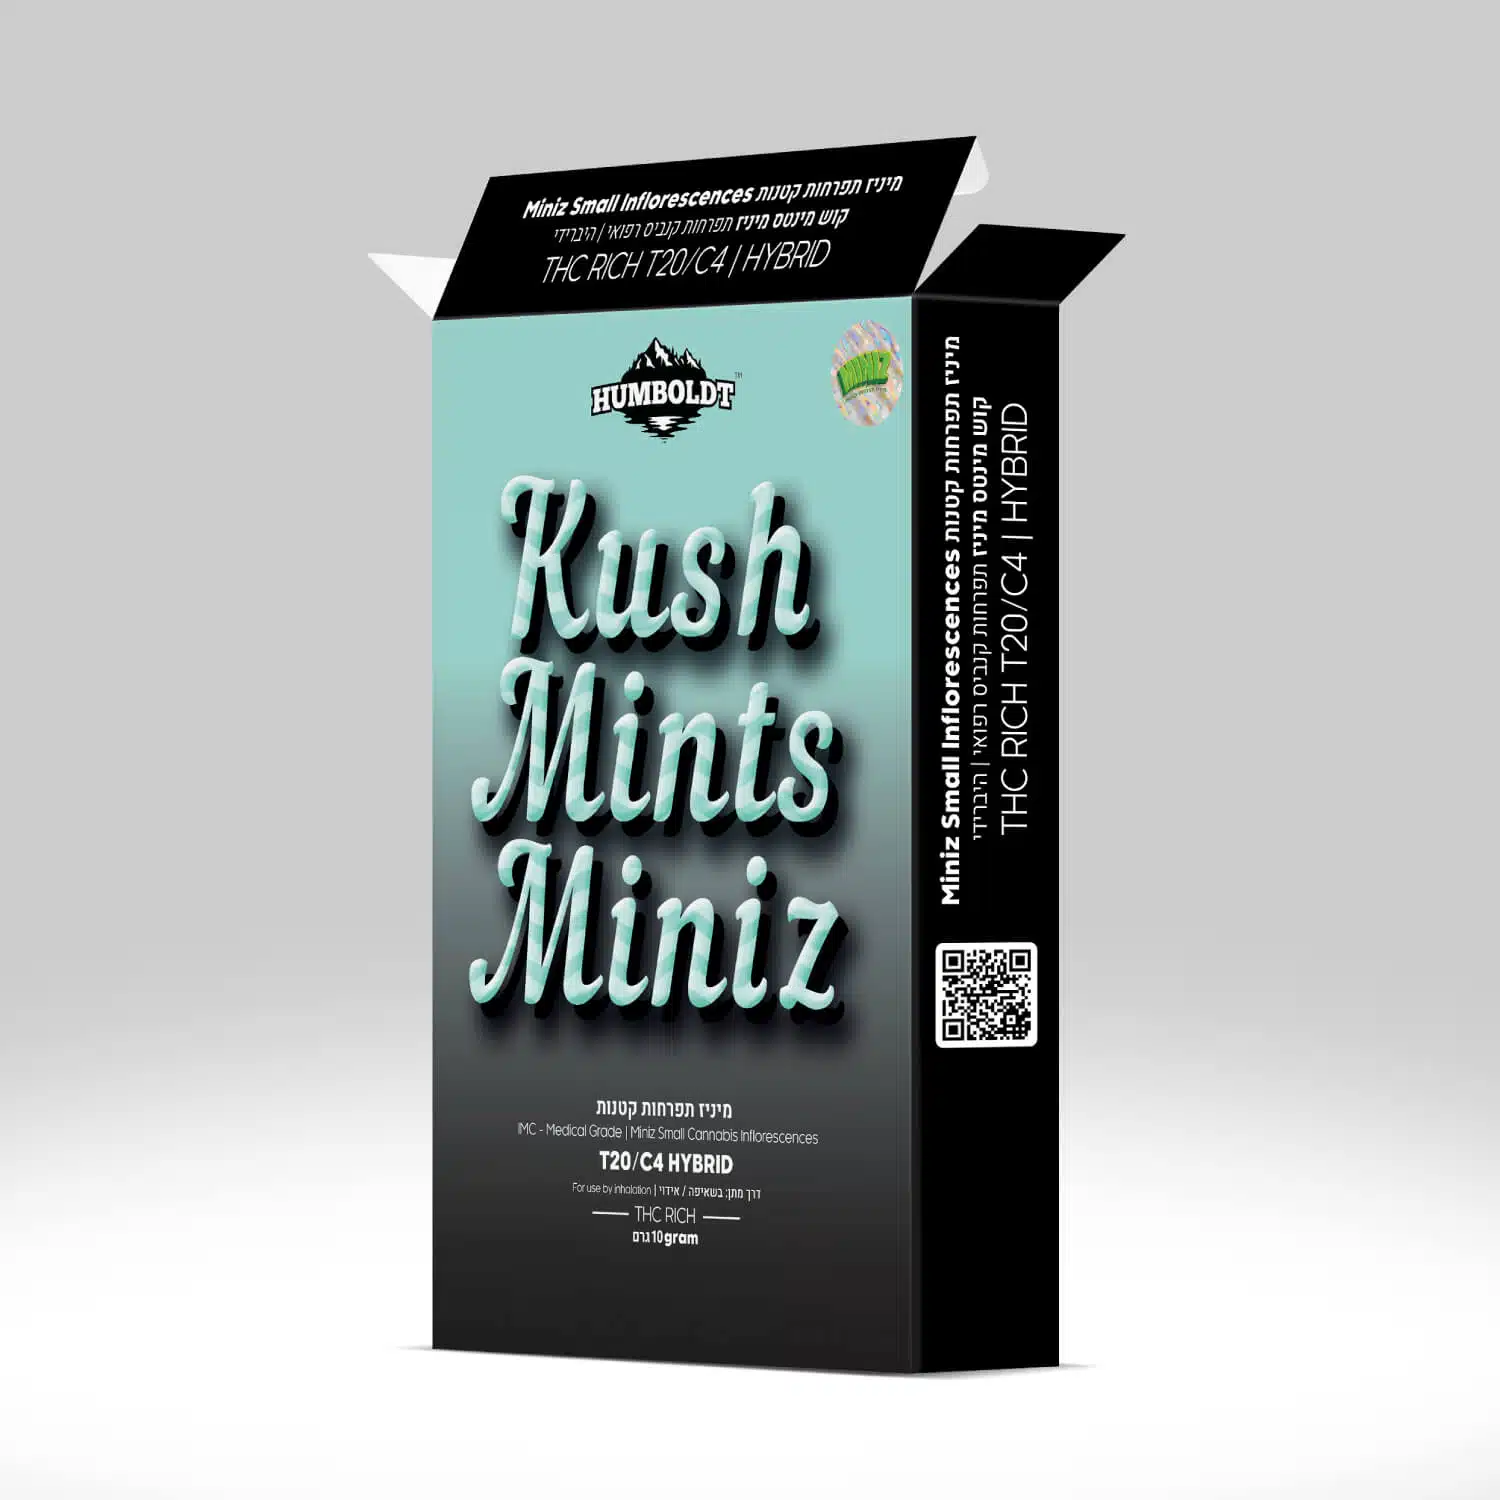 קוש מינטס מיניז (Kush Mints Miniz) - היבריד T20/C4